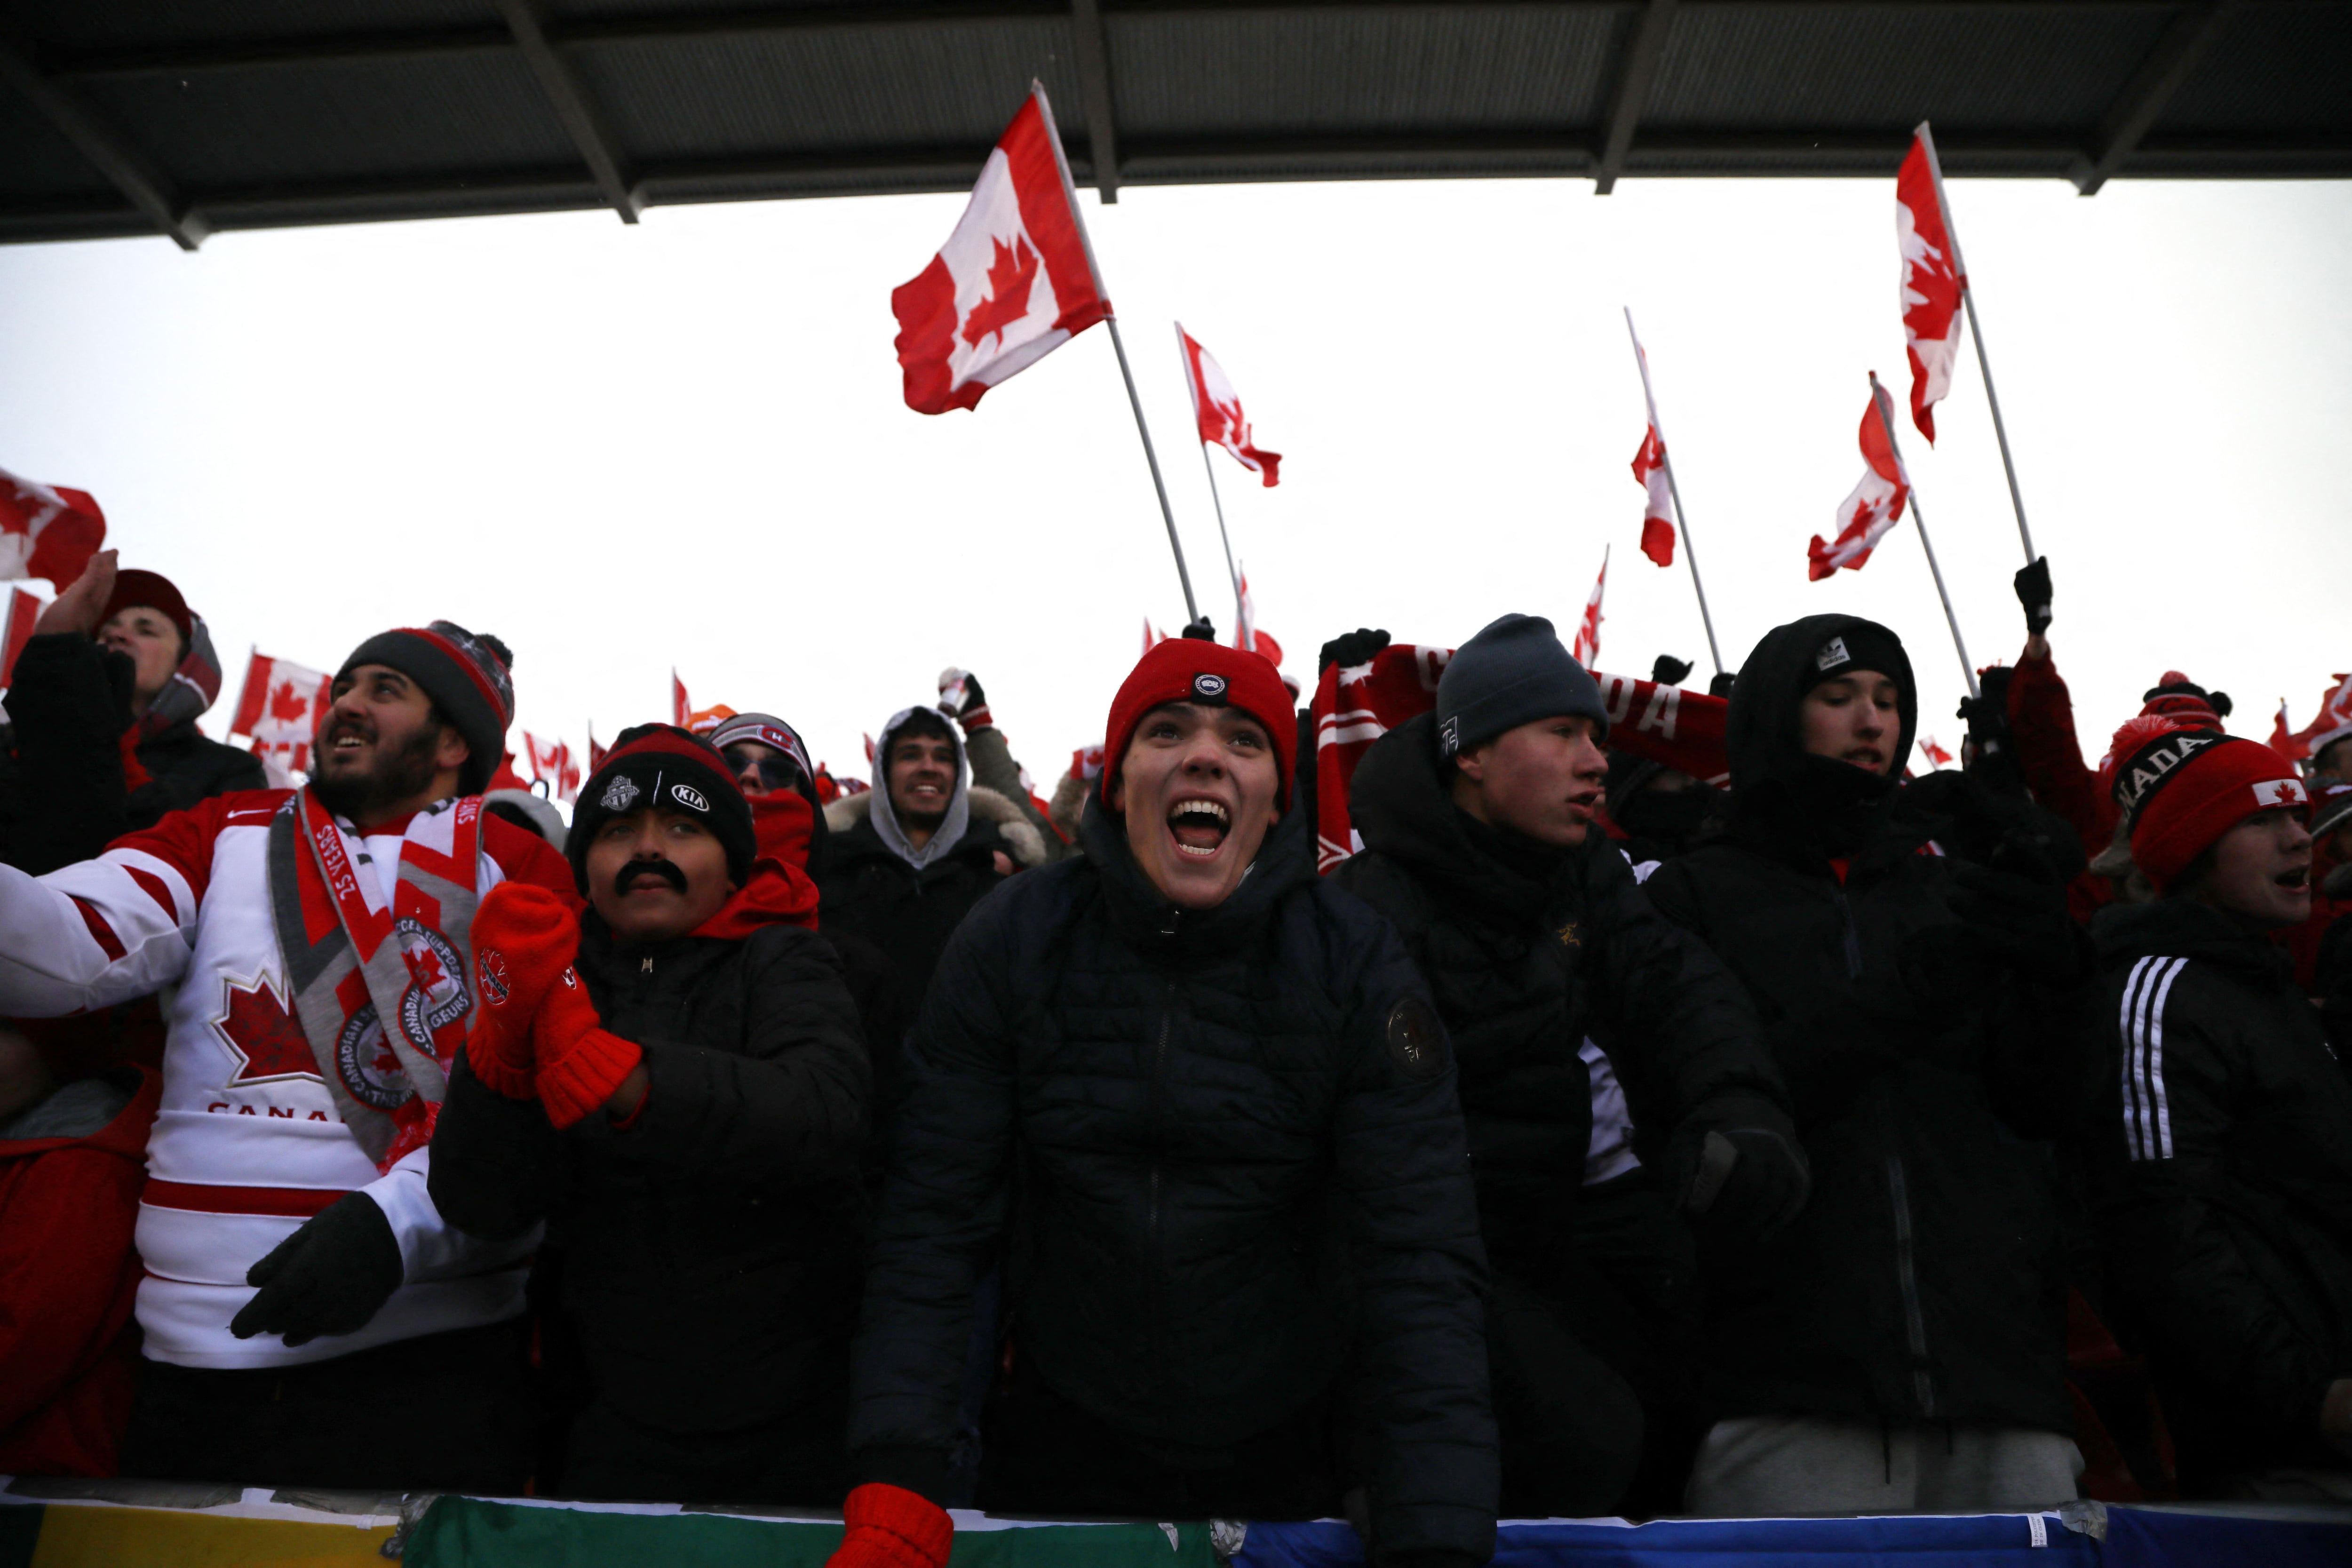 Aficionados de Canadá festejan la clasificación de su país al Mundial tras golear a Jamaica. Estadio BMO Field, Toronto, Canadá. 27 de marzo de 2022.
REUTERS/Carlos Osorio